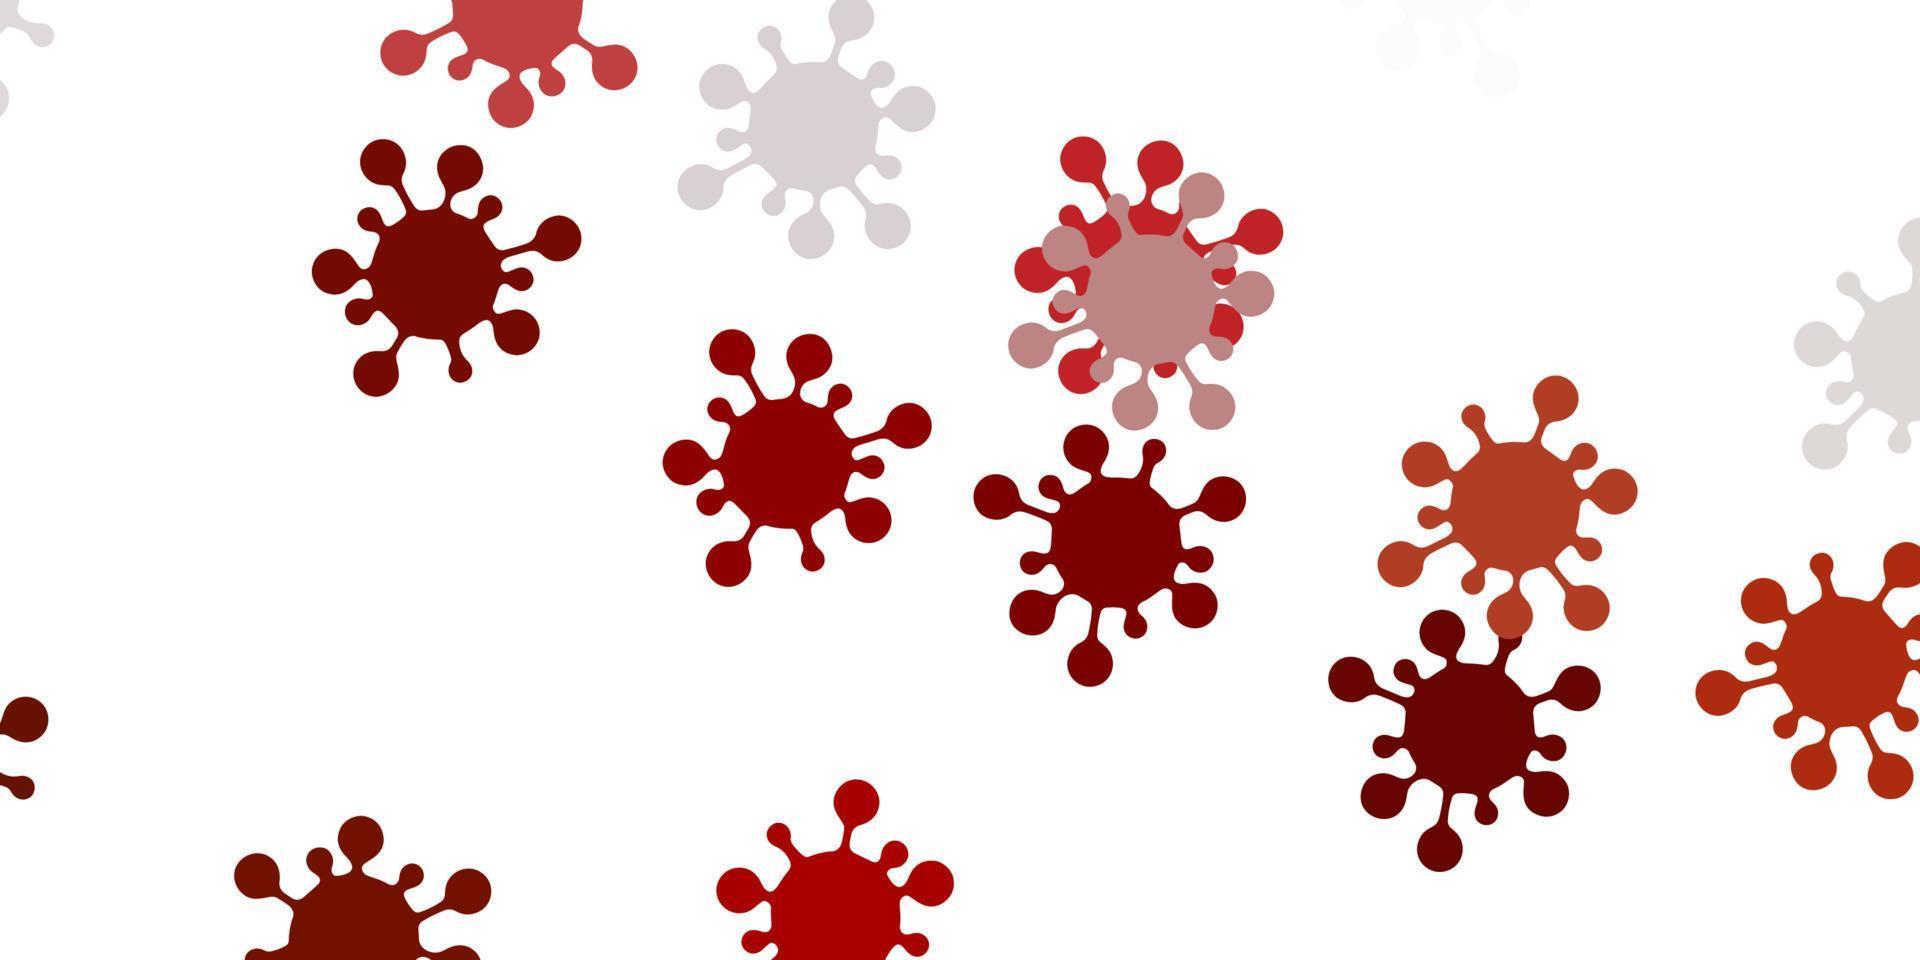 sfondo vettoriale marrone chiaro con simboli di virus.